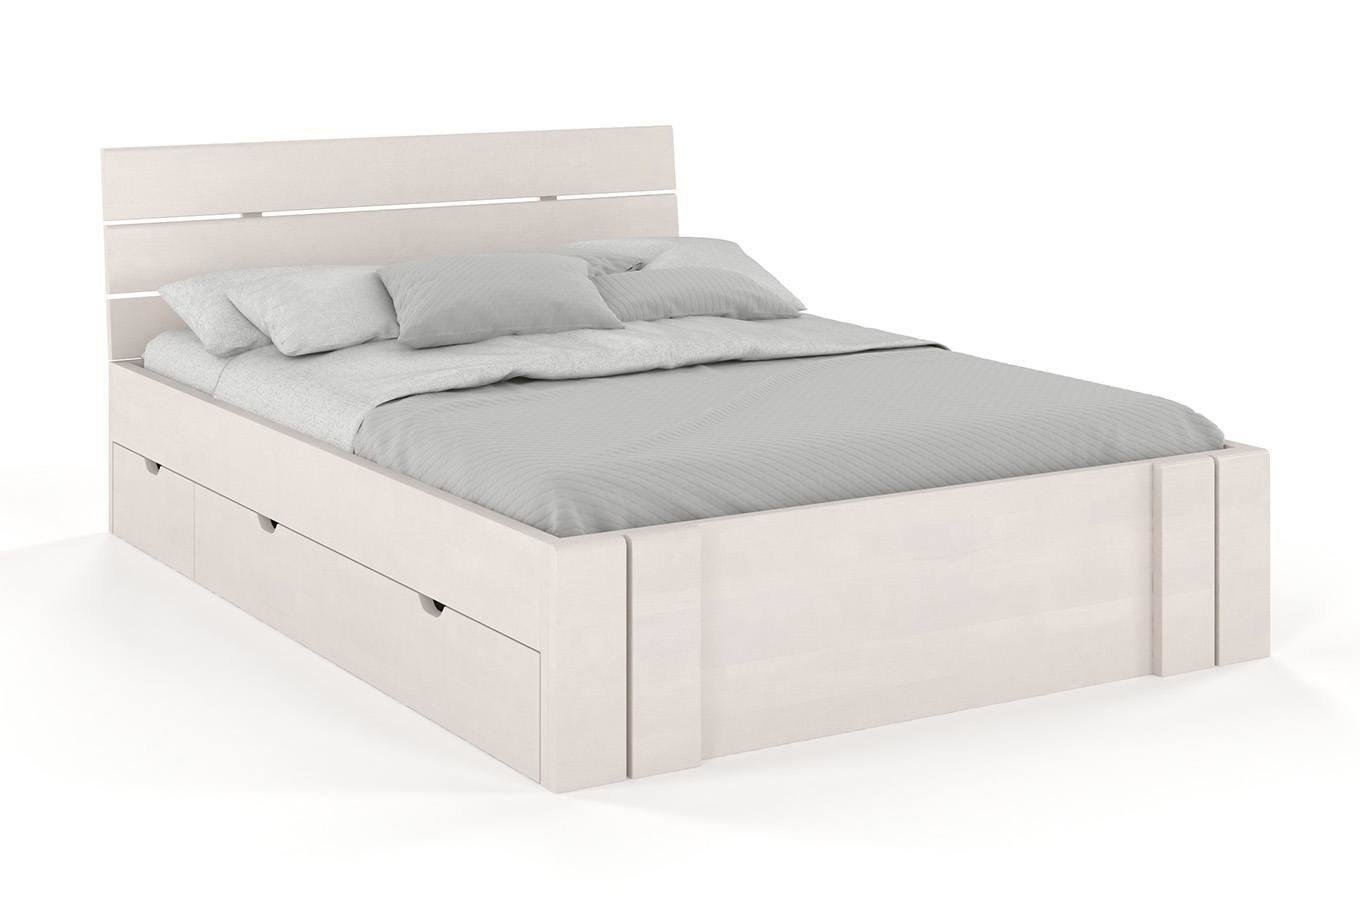 Łóżko drewniane bukowe Visby Arhus High Drawers (z szufladami) / 180x200 cm, kolor biały